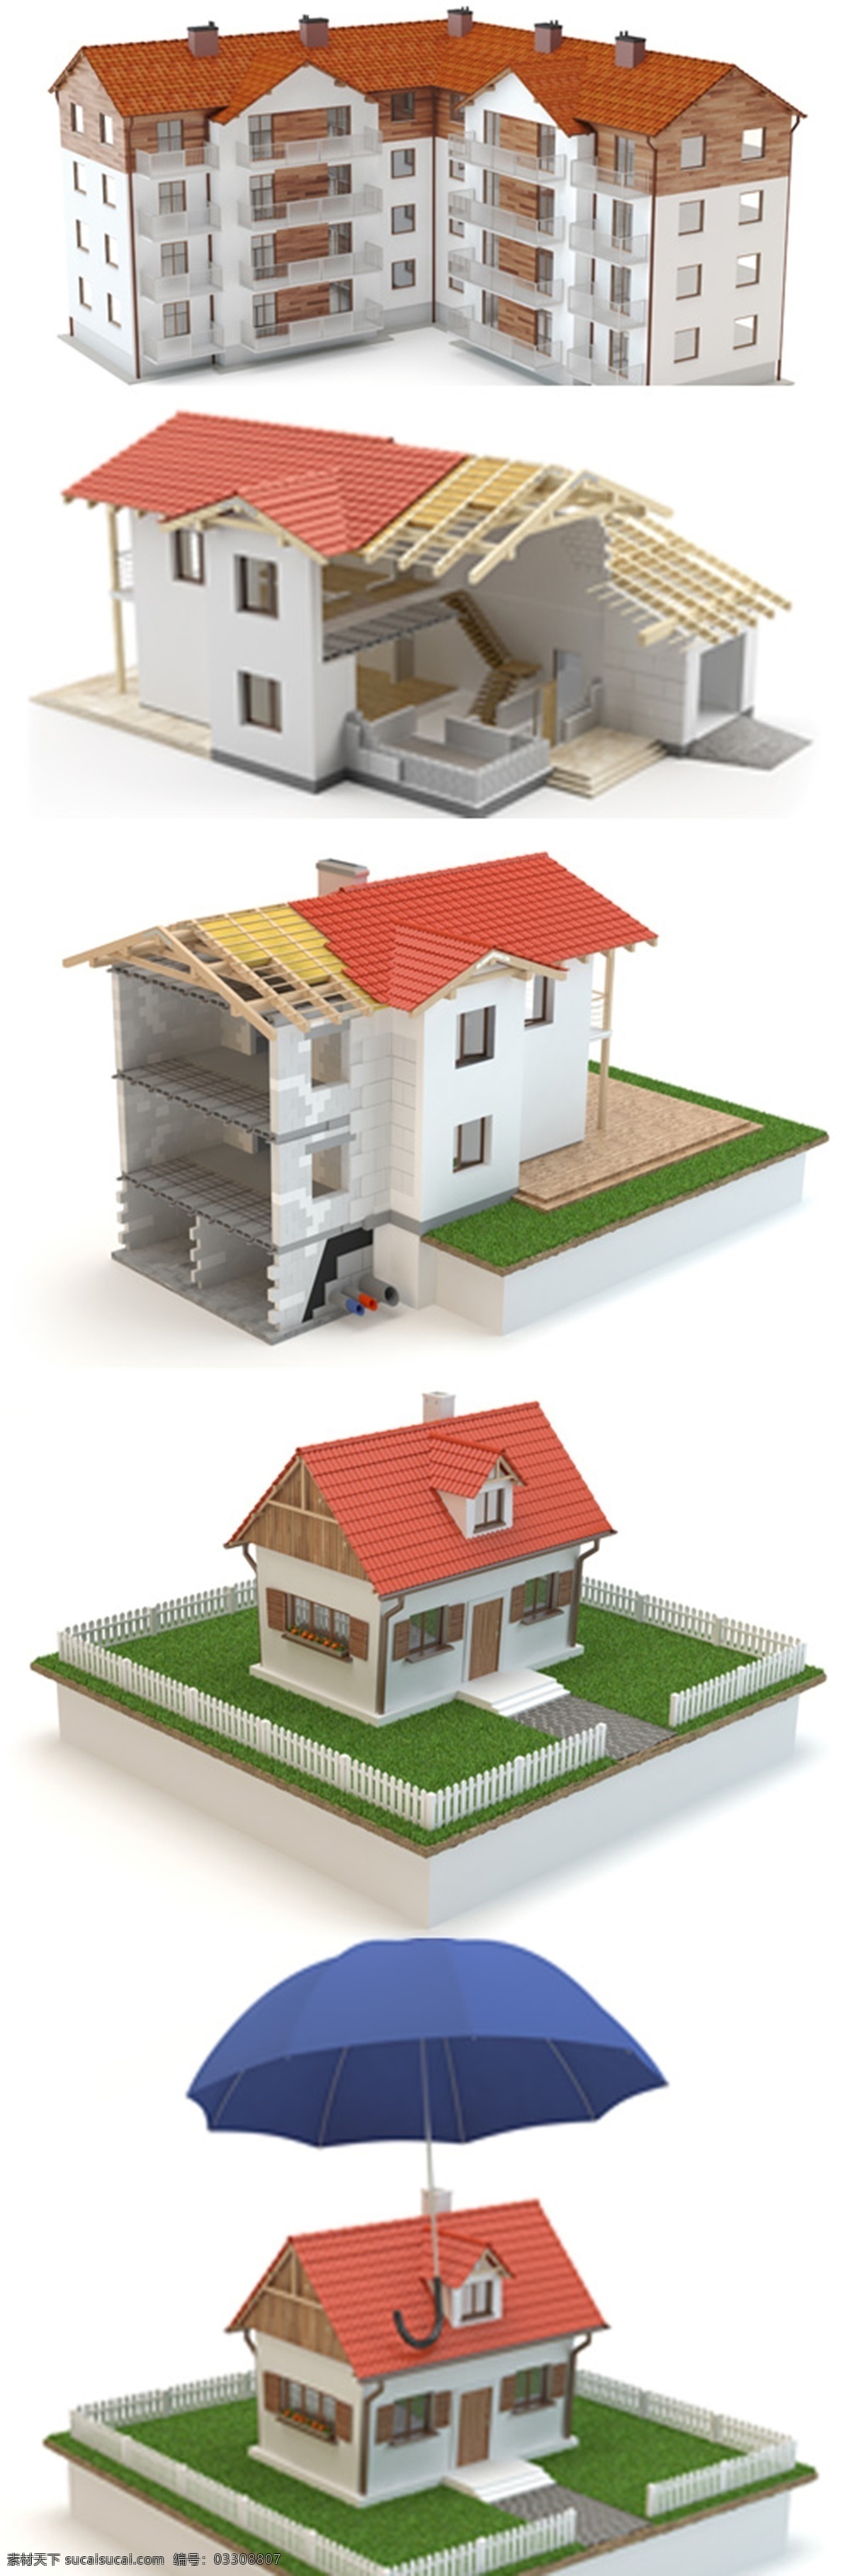 房子 模型 房子设计 卡通房子 房子模型 雨伞 建筑设计 环境家居